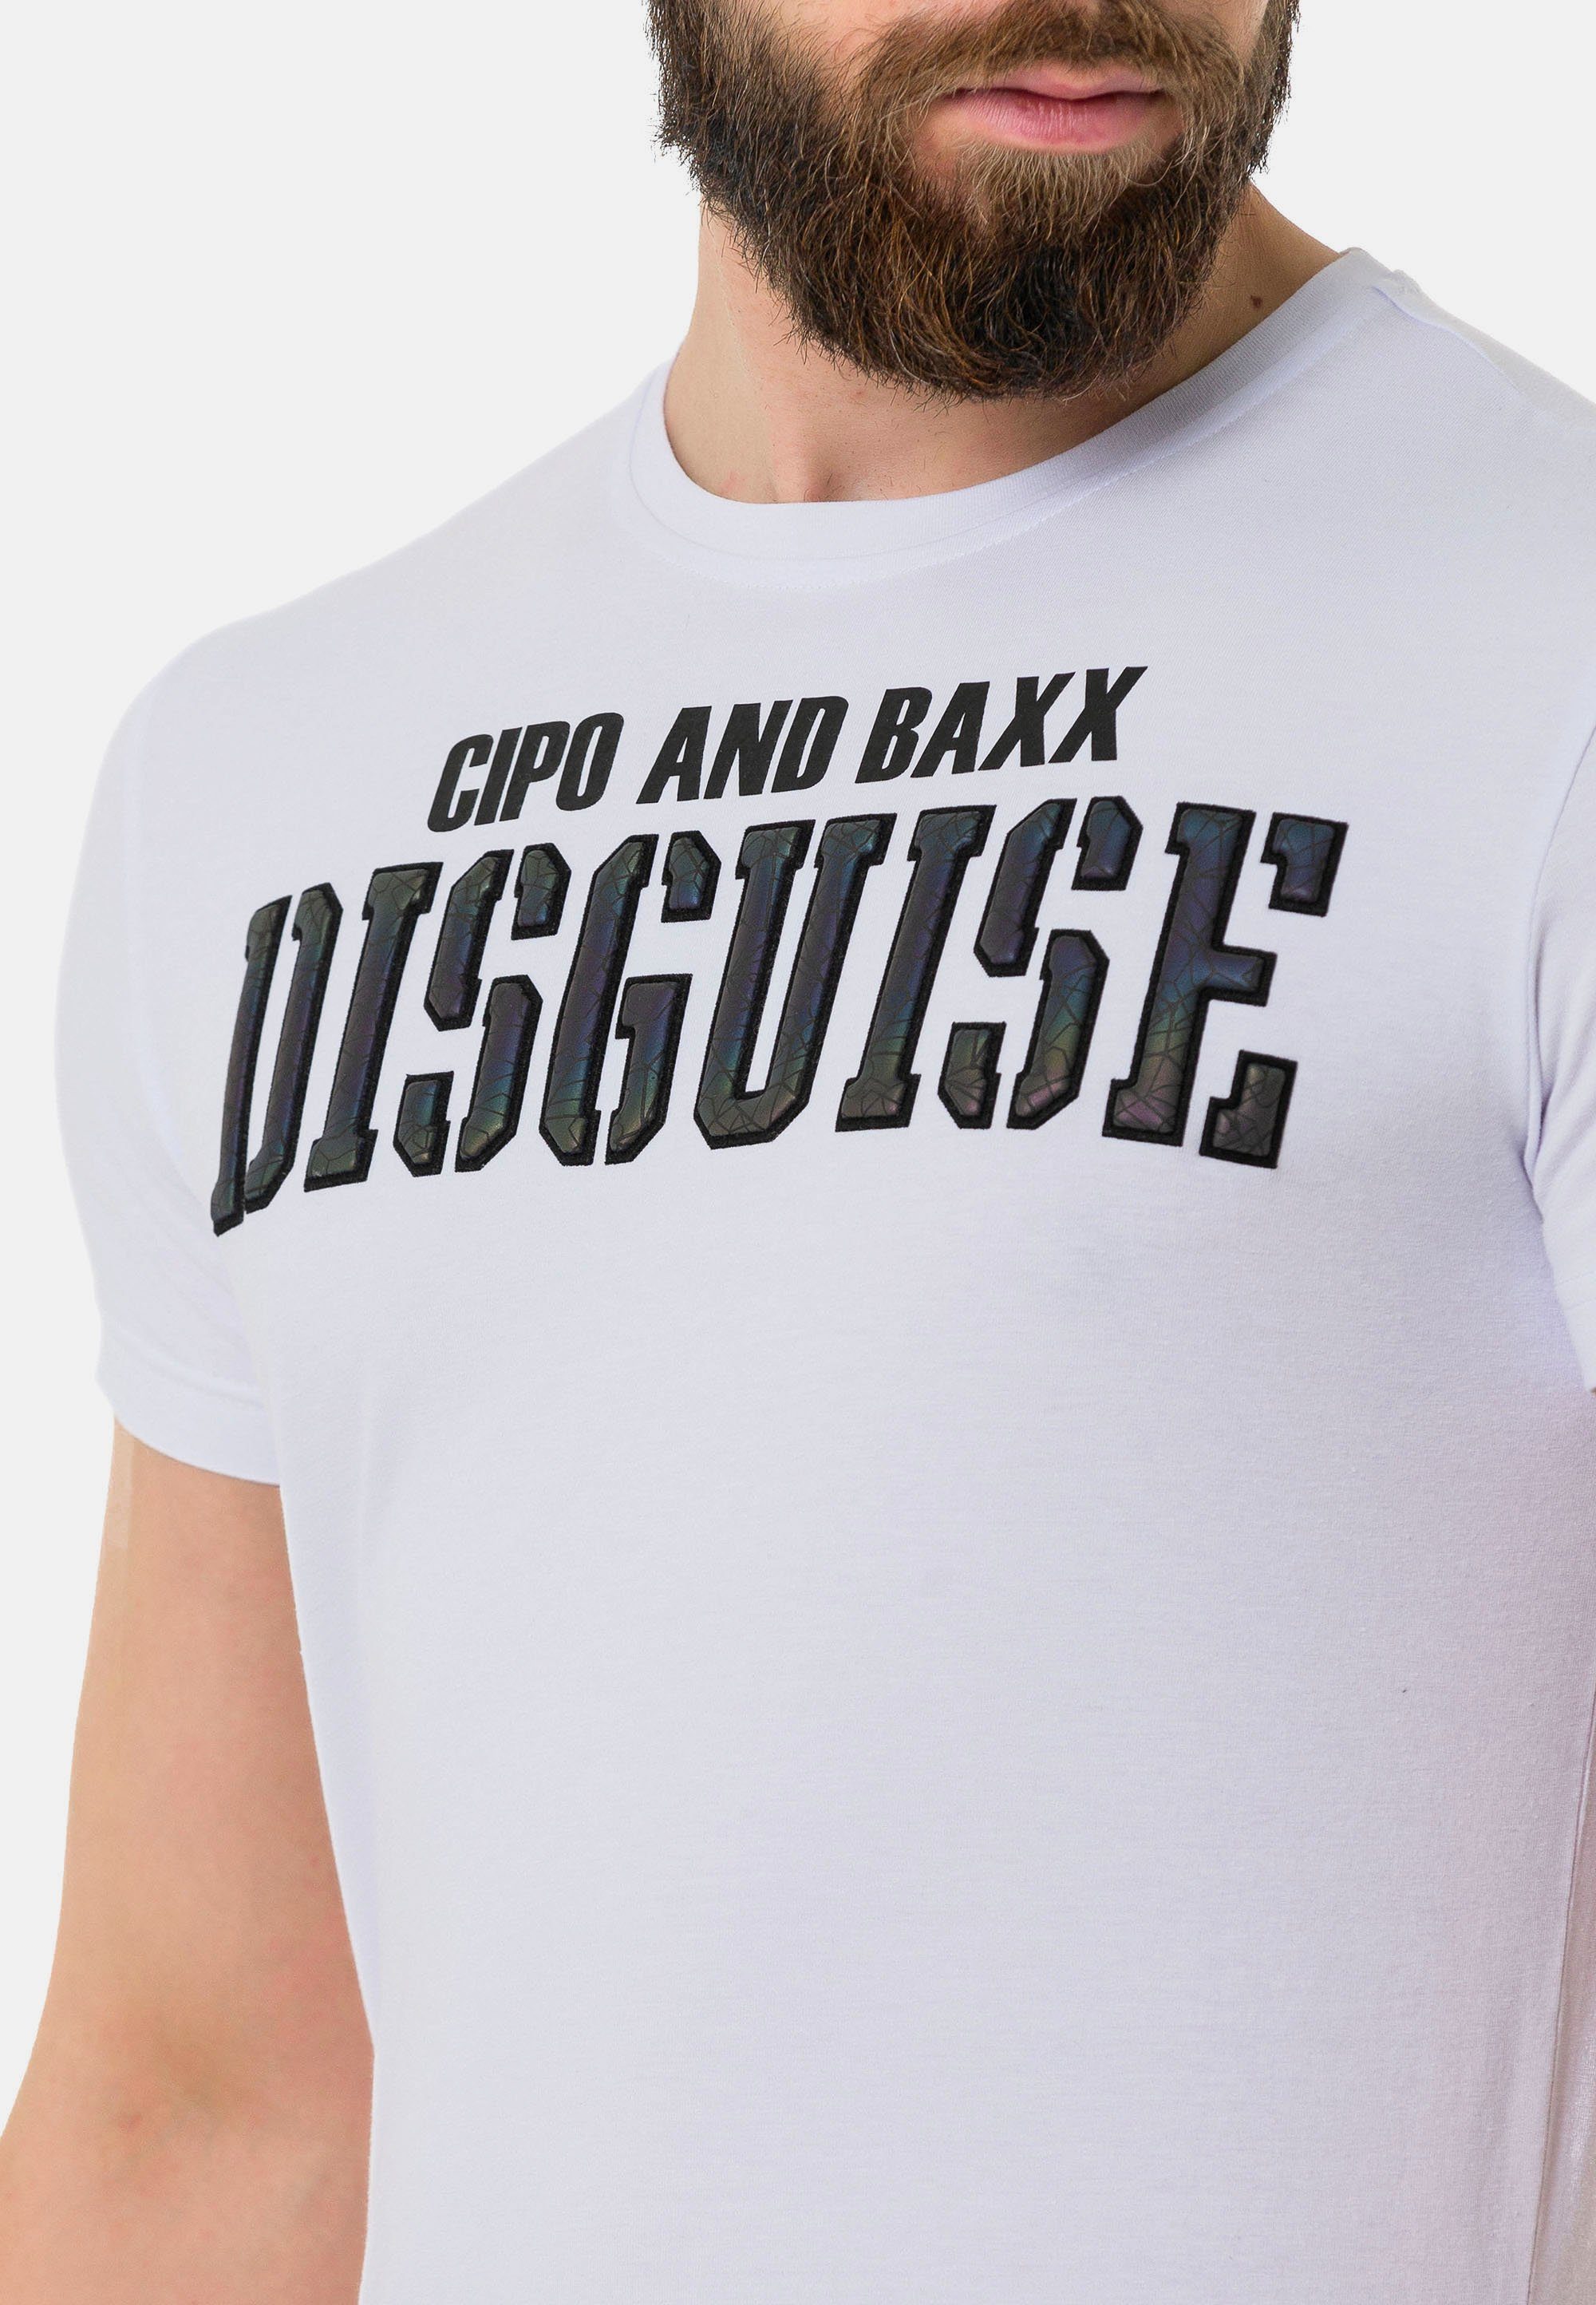 Print & coolem weiß Baxx Cipo mit T-Shirt